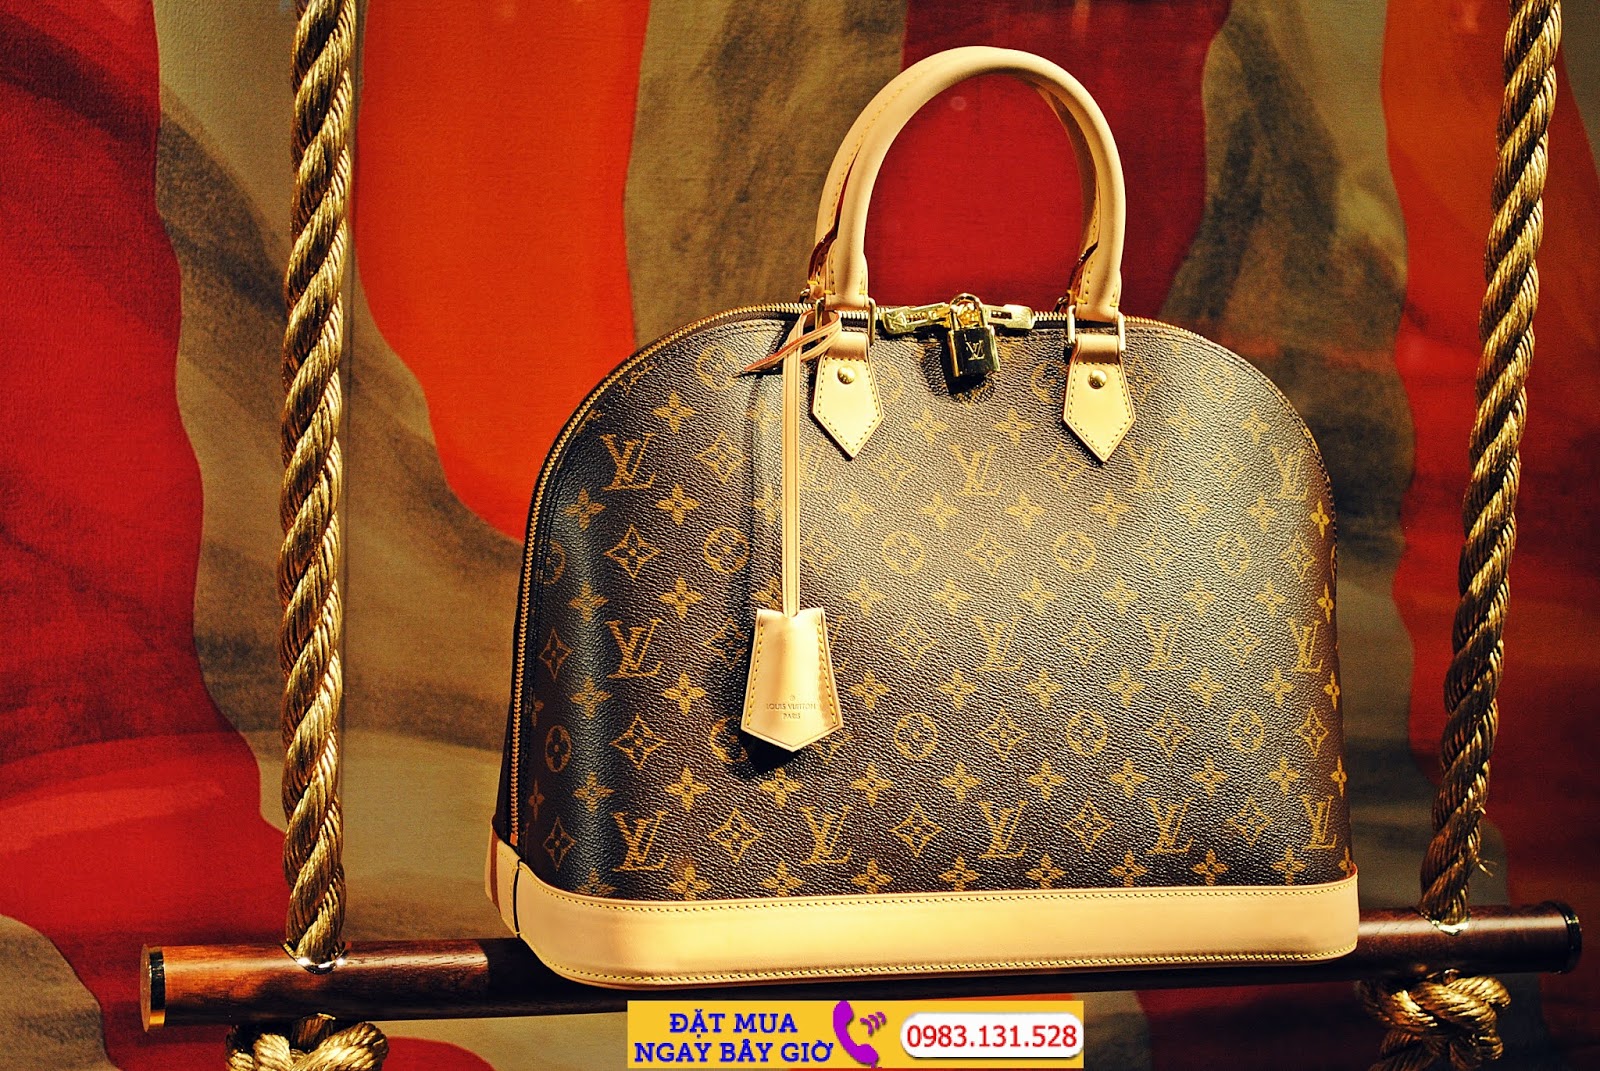 Mẹo phân biệt túi Louis Vuitton hàng chính hãng và túi Louis Vuitton hàng Fake